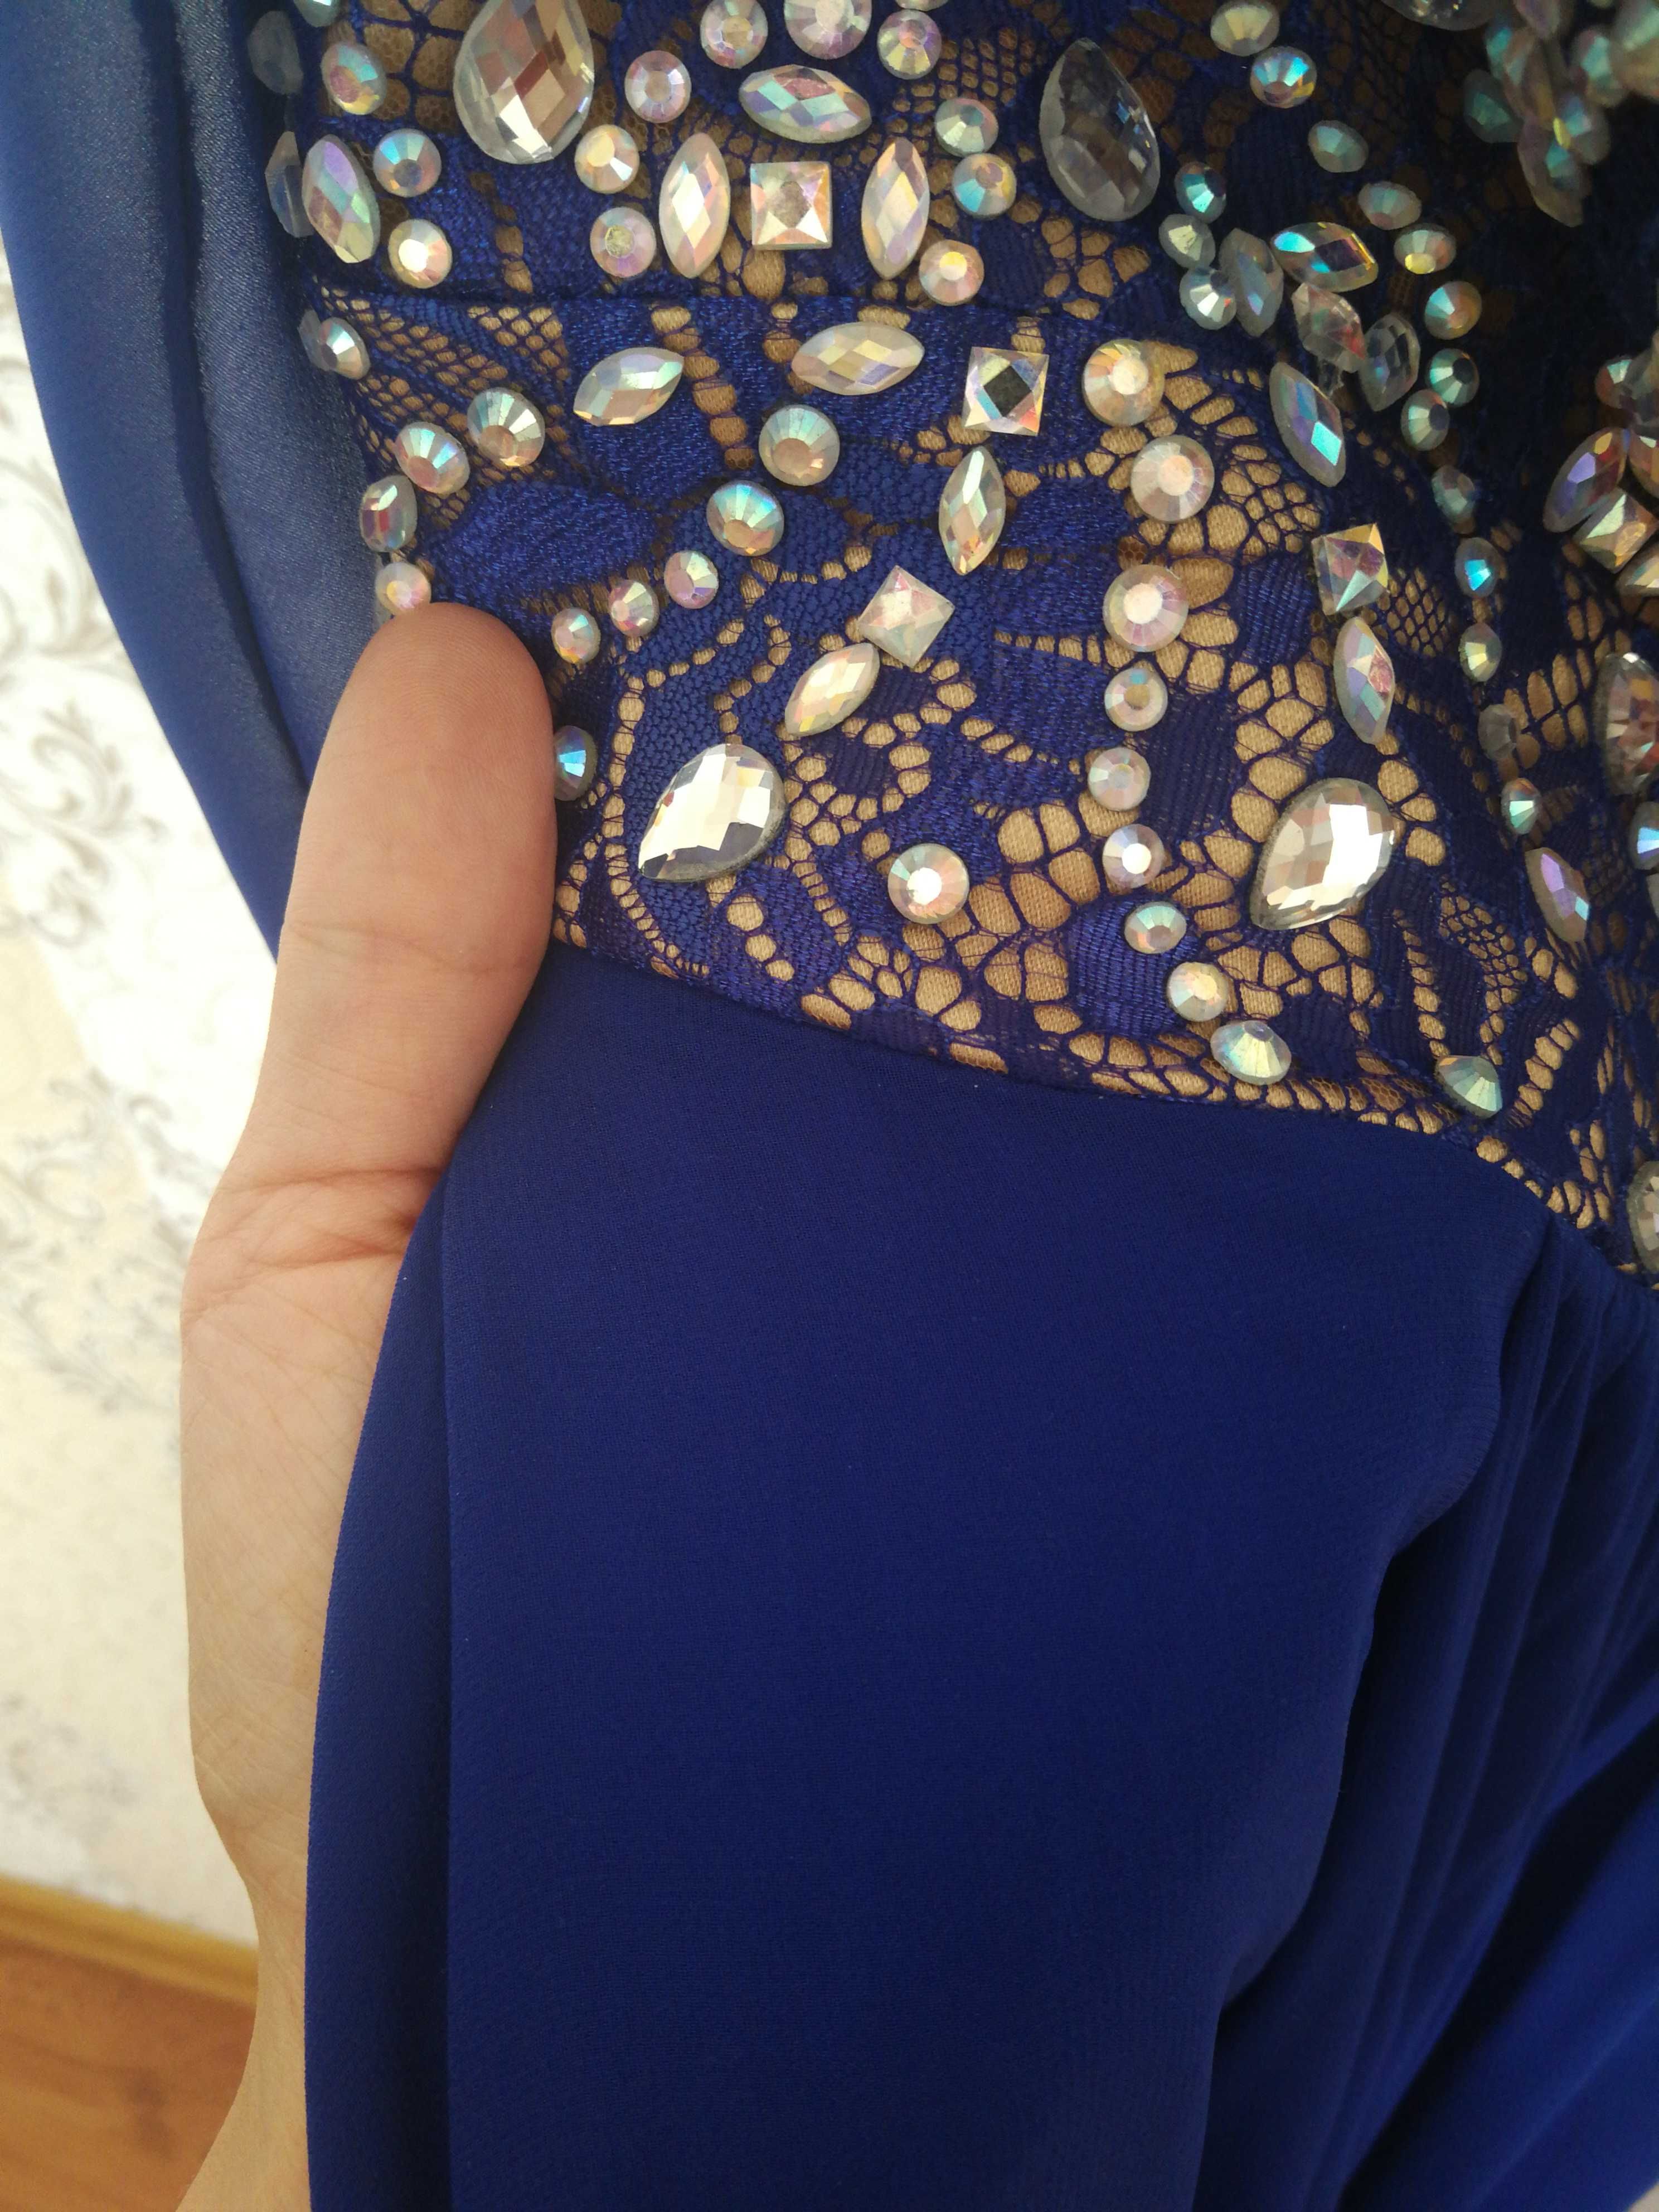 Вечернее платье синего(электро) цвета, турецкое, высокого качества